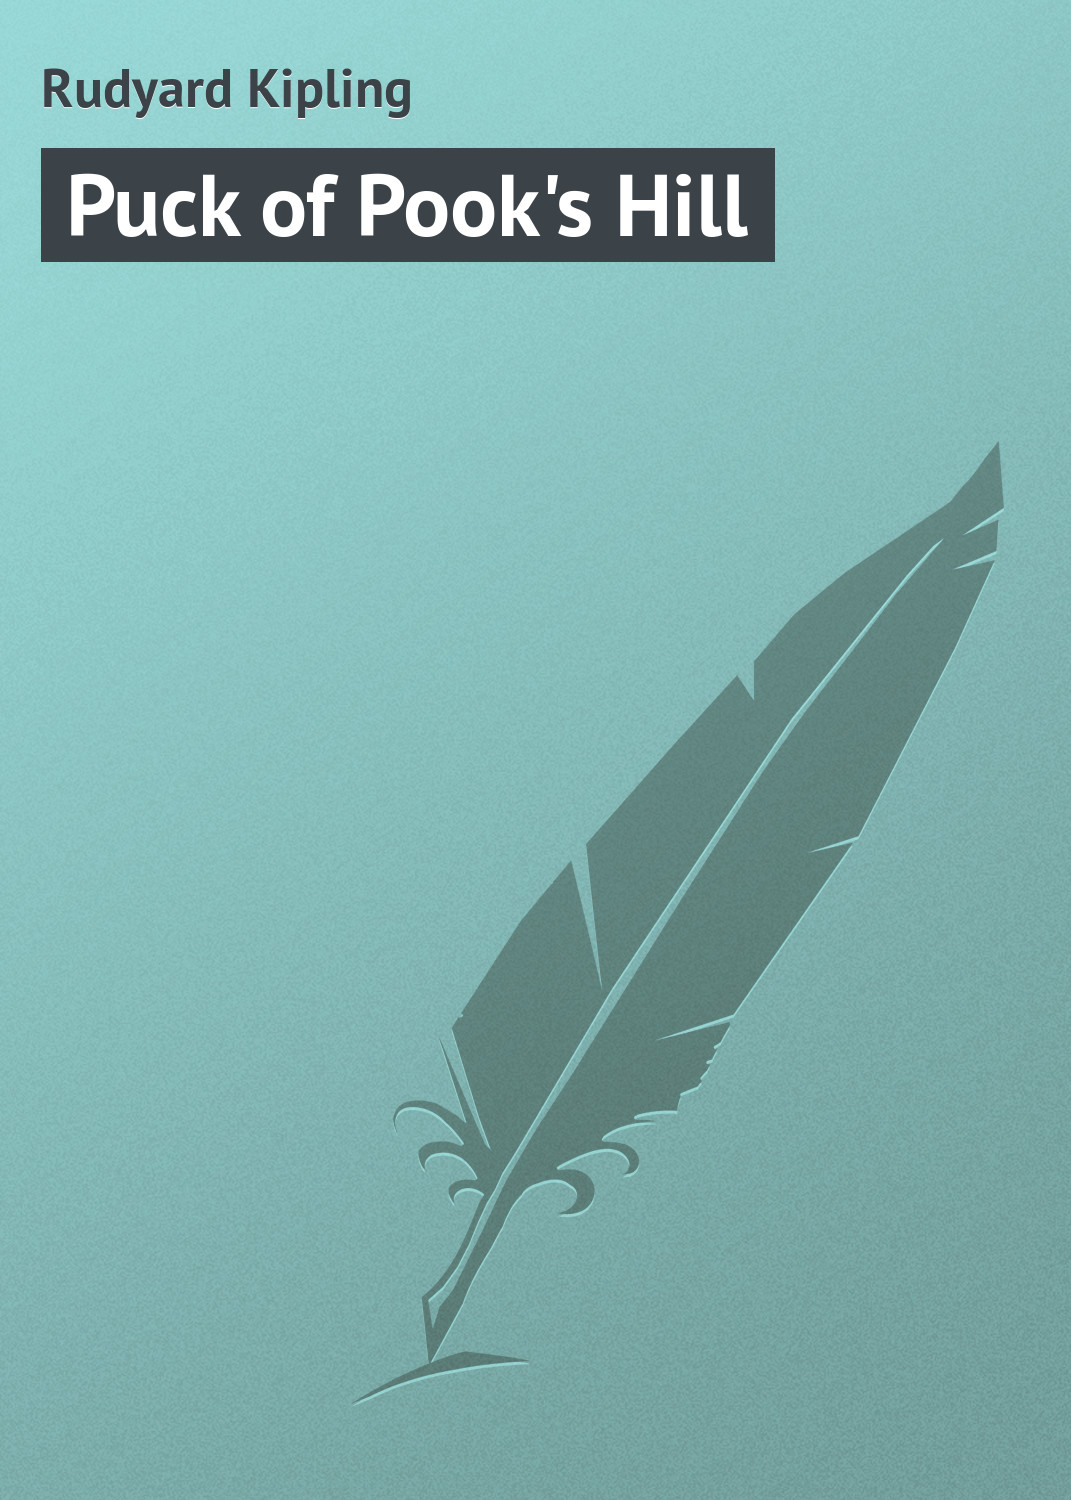 Книга Puck of Pook's Hill из серии , созданная Rudyard Kipling, может относится к жанру Иностранные языки, Зарубежная классика. Стоимость электронной книги Puck of Pook's Hill с идентификатором 22805434 составляет 5.99 руб.